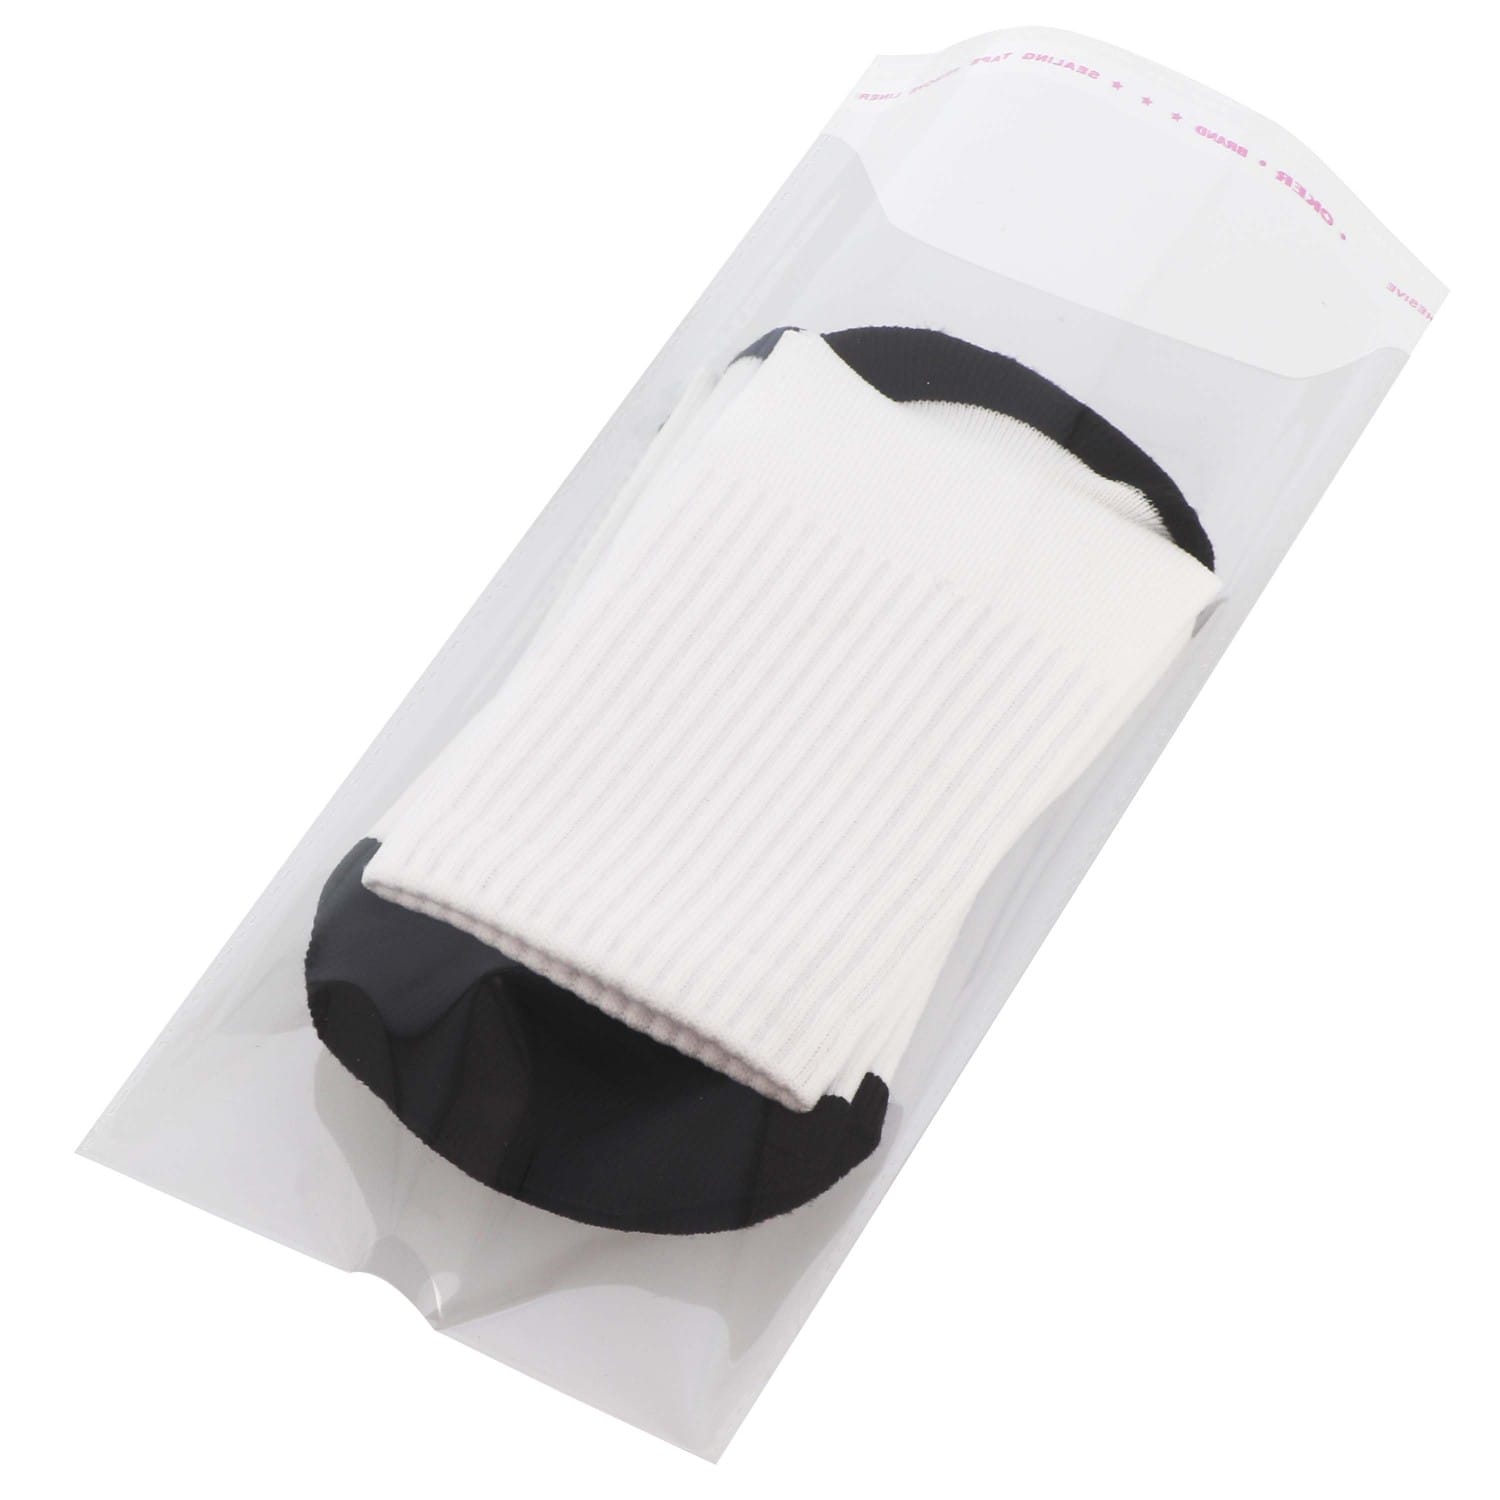 Paire de chaussettes blanches en polyester - Taille 42/47